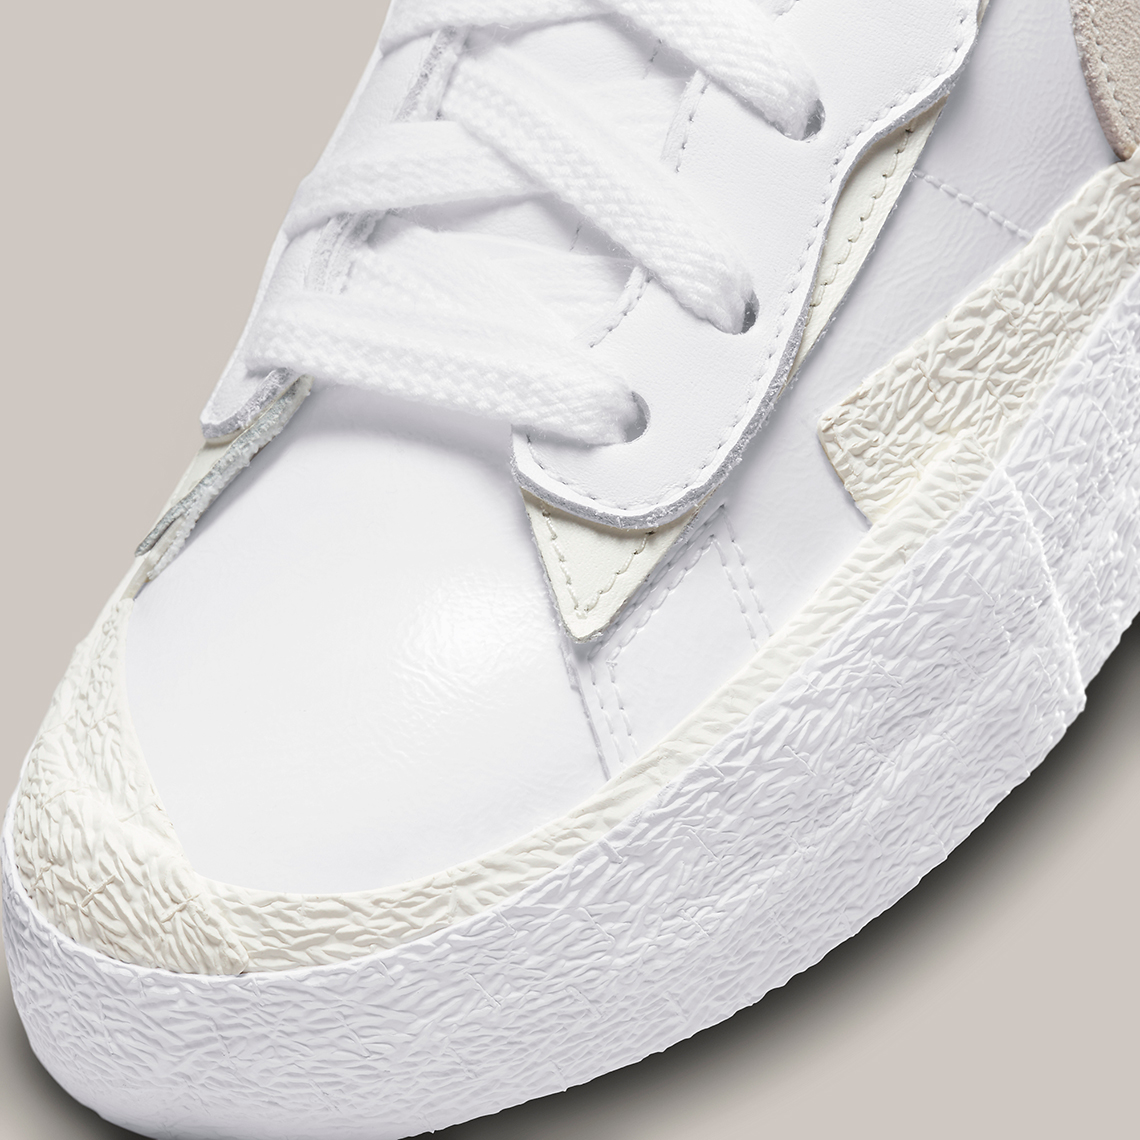 Sacai Nike Blazer Low White Tan Dm6443 100 9